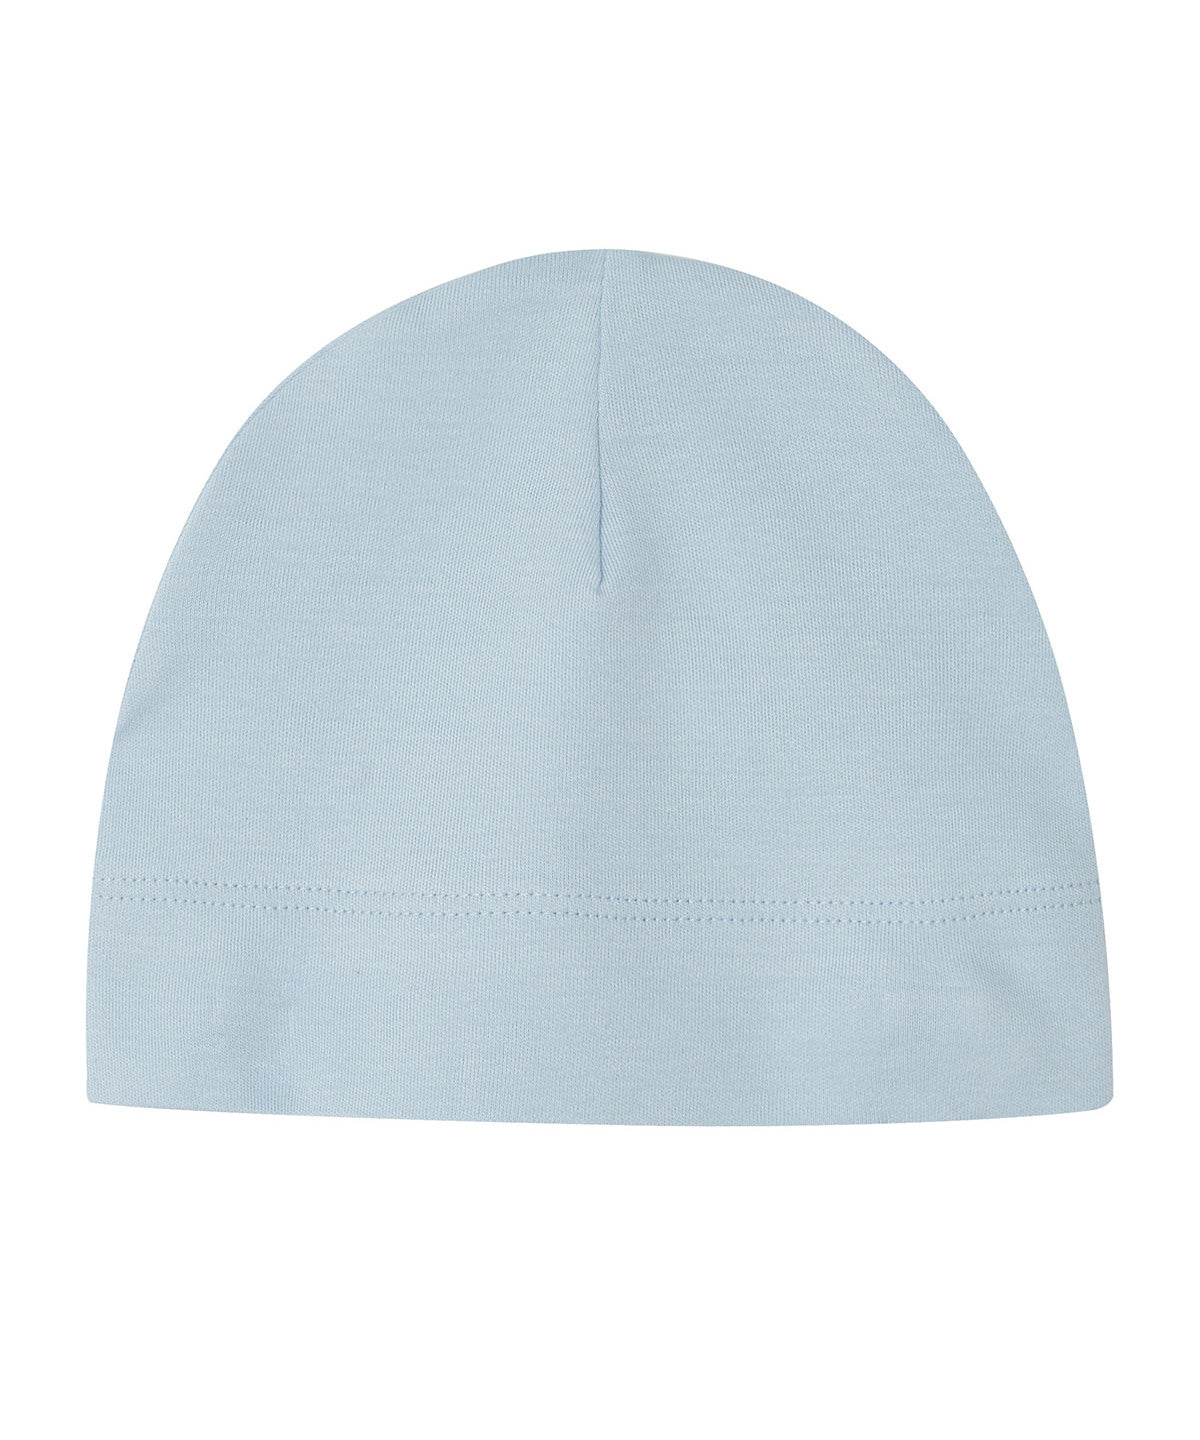 Personalised Hats - Light Blue Babybugz Baby hat